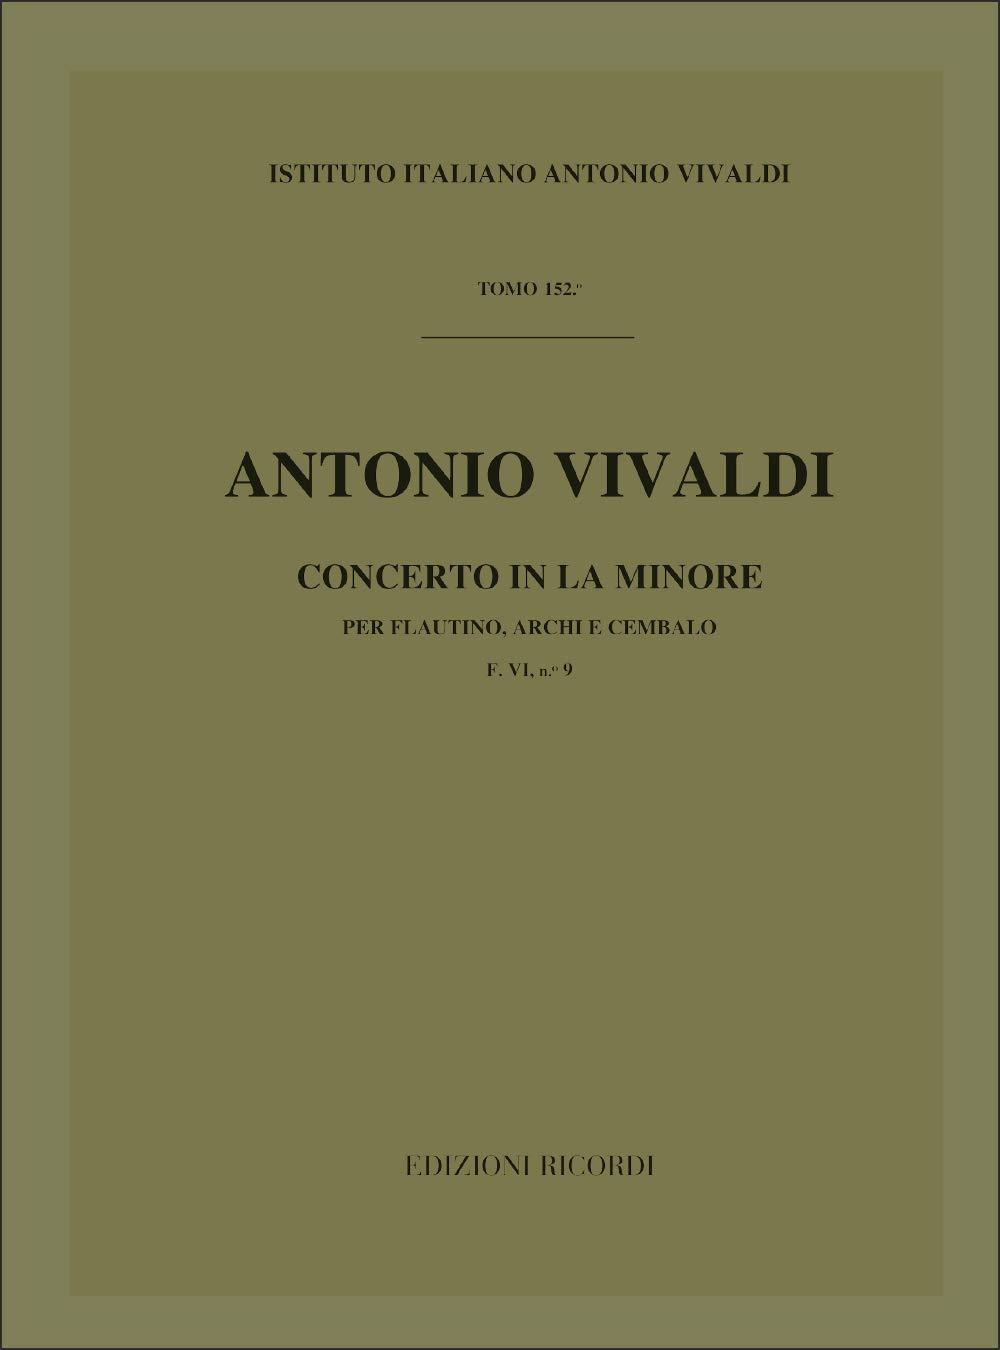 Concerto Per Ottavino ('Flautino'), Archi e BC: , in La Min Rv 445 F.Vi-9 - Tomo 152 - Antonio Vivaldi | Suono Flauti